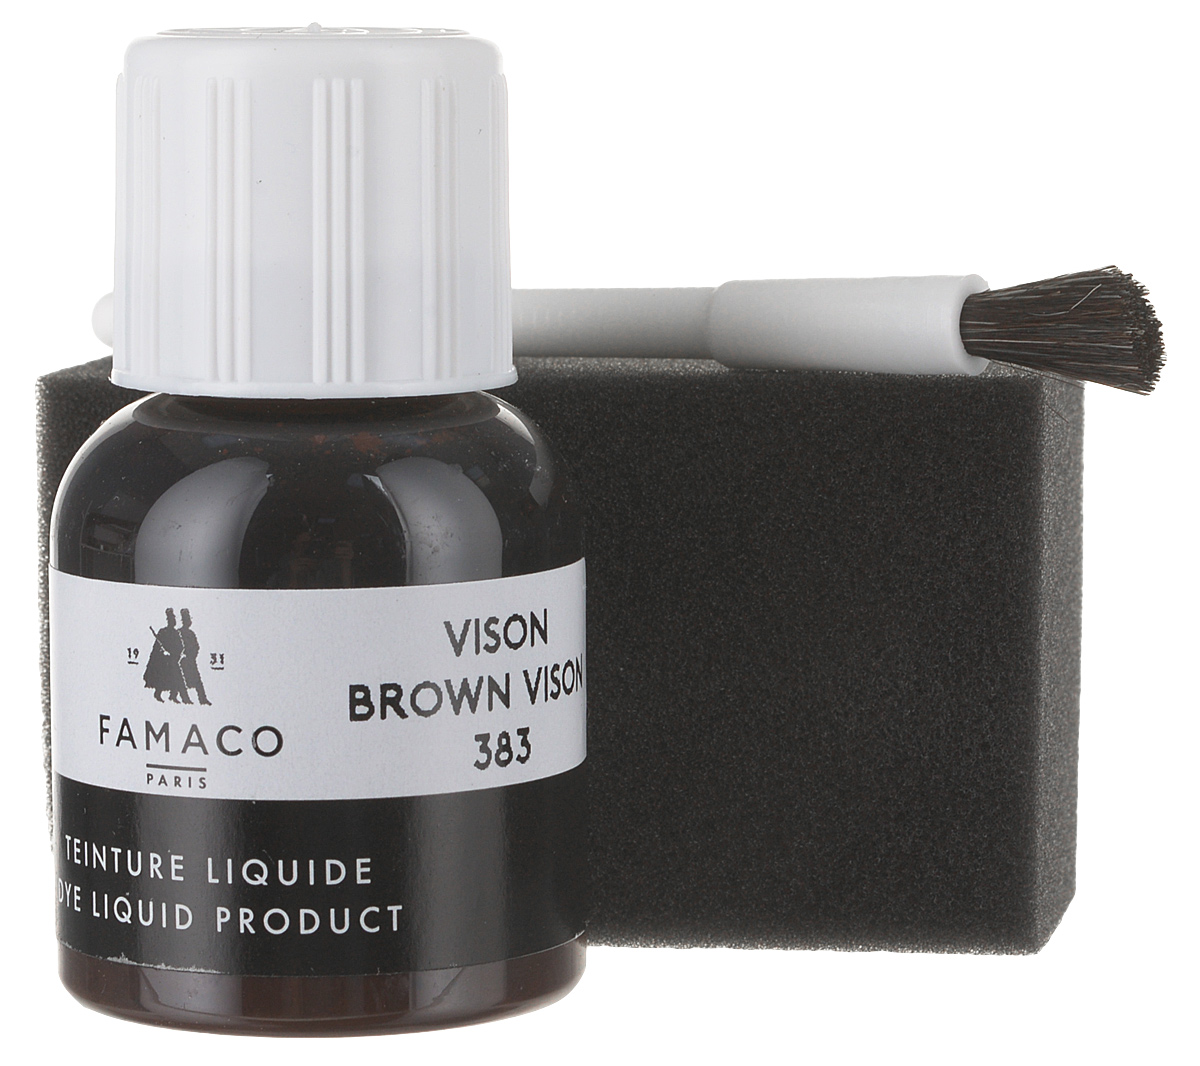 Жидкий краситель для кожи Famaco, цвет: темно-коричневый, 30 мл